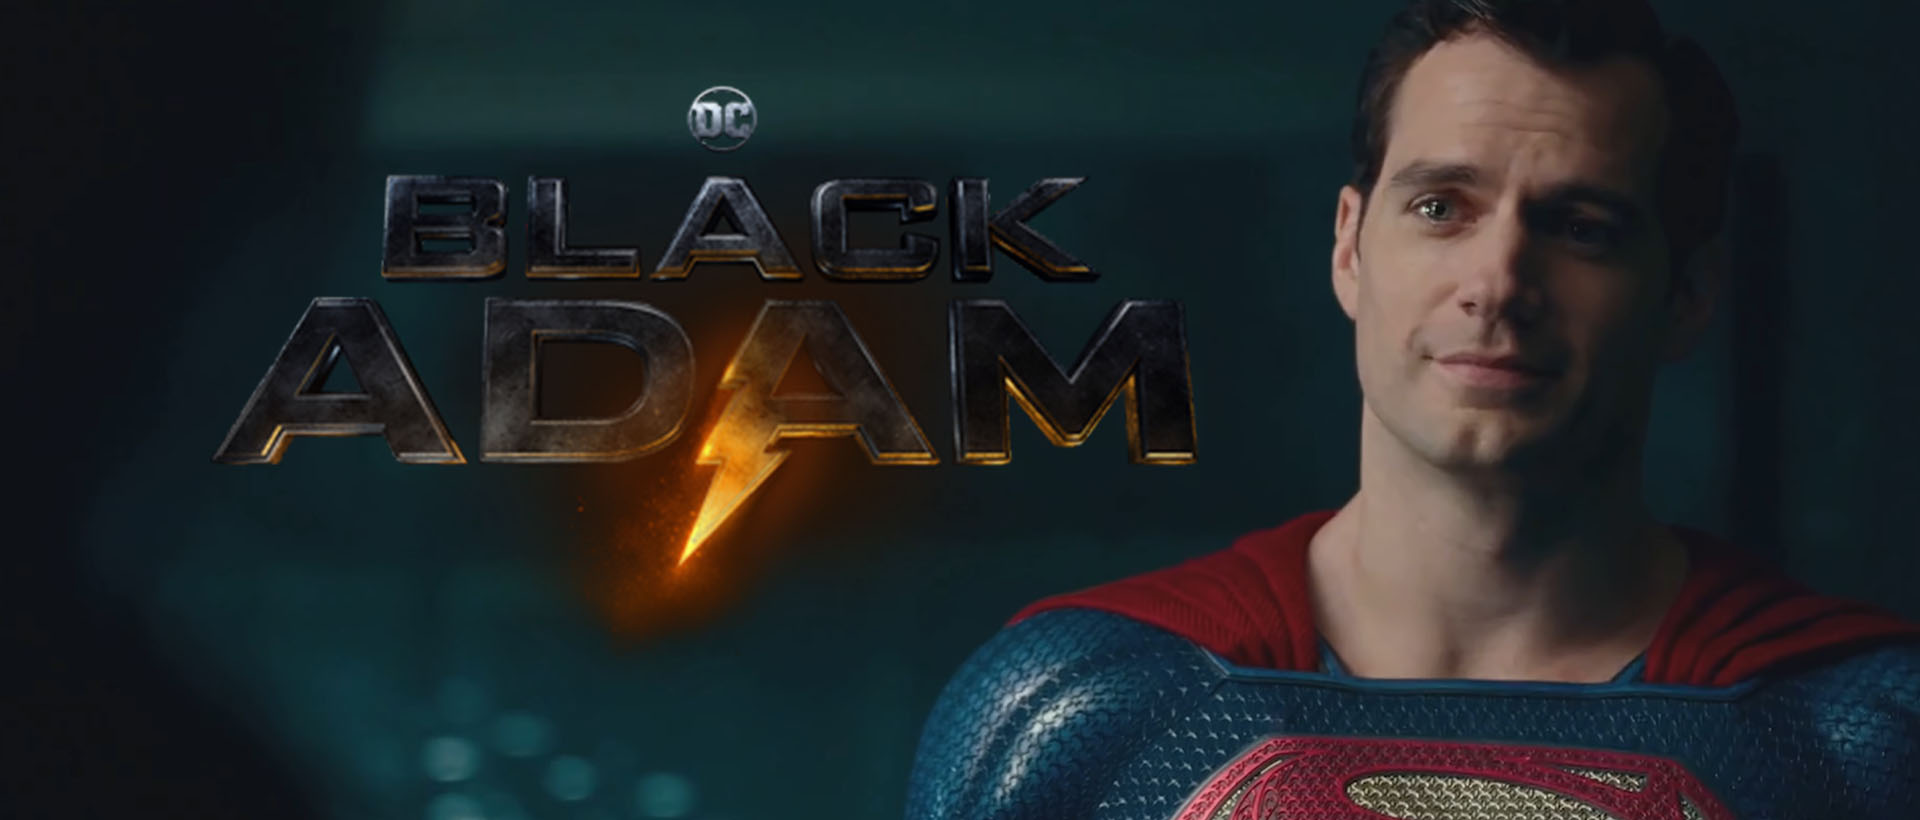 superman henry cavill black adam banner